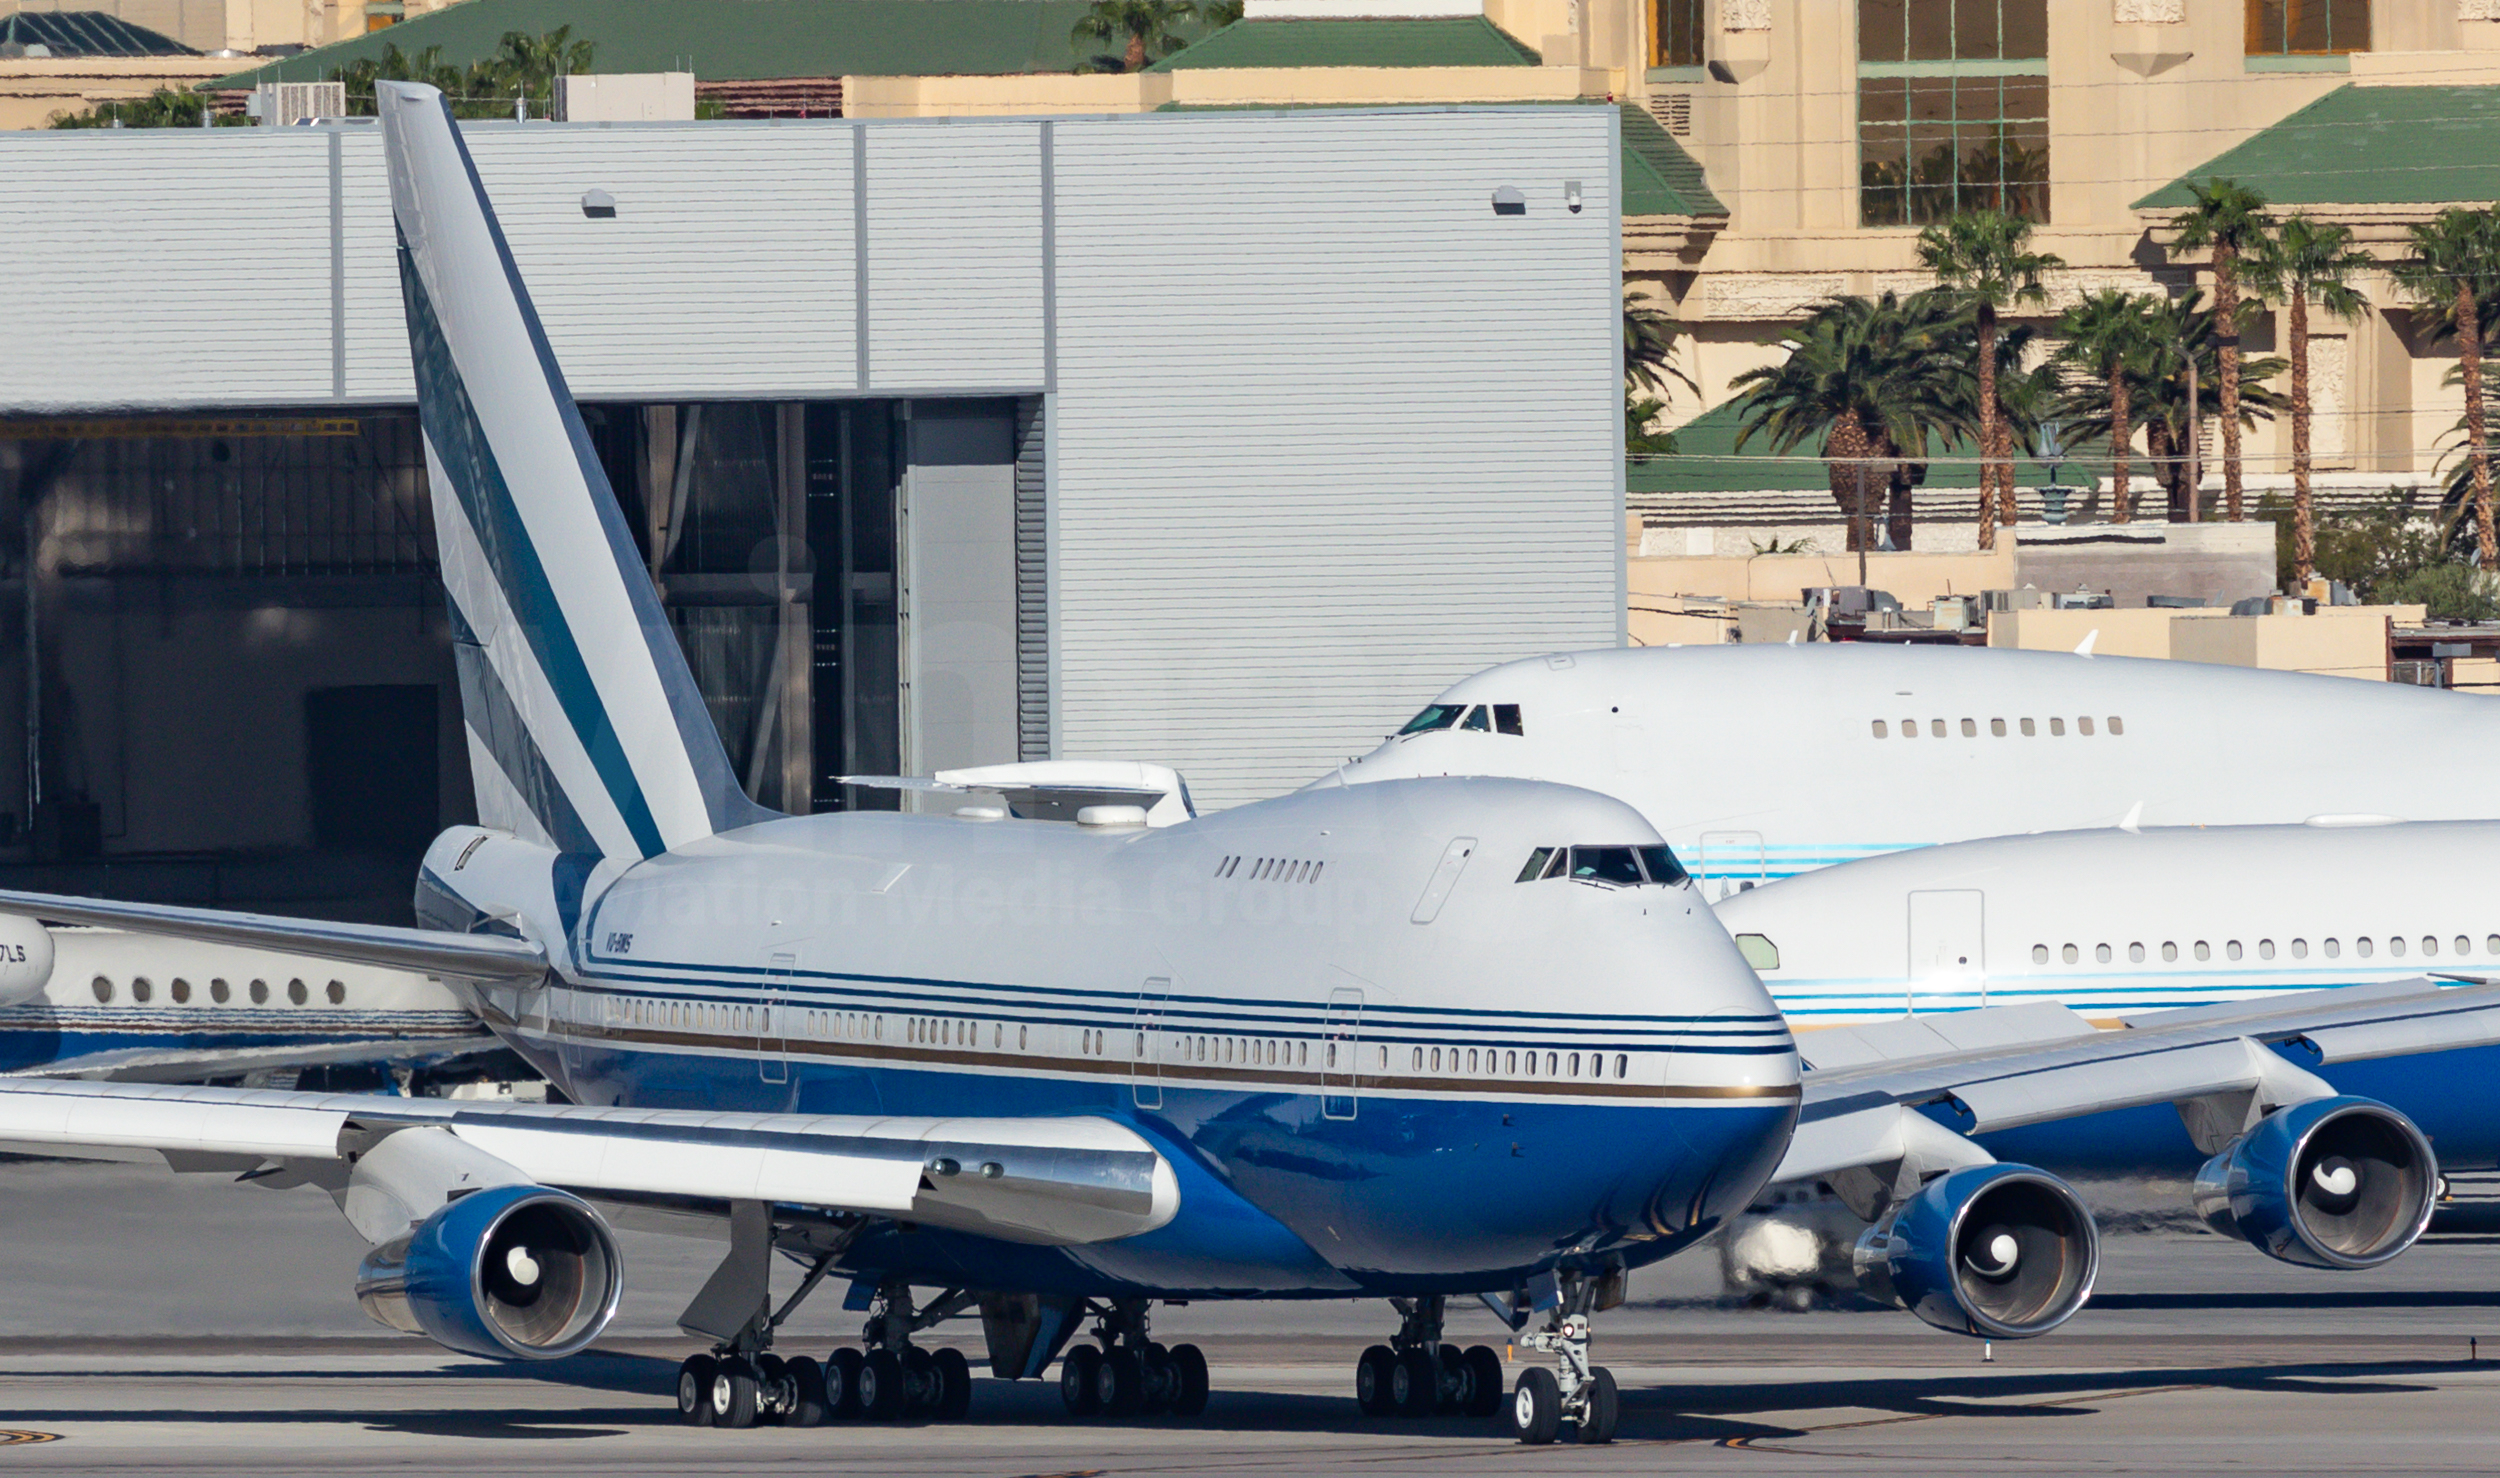 Las Vegas Sands Corporation Boeing 747SP-21 VQ-BMS – v1images Aviation Media